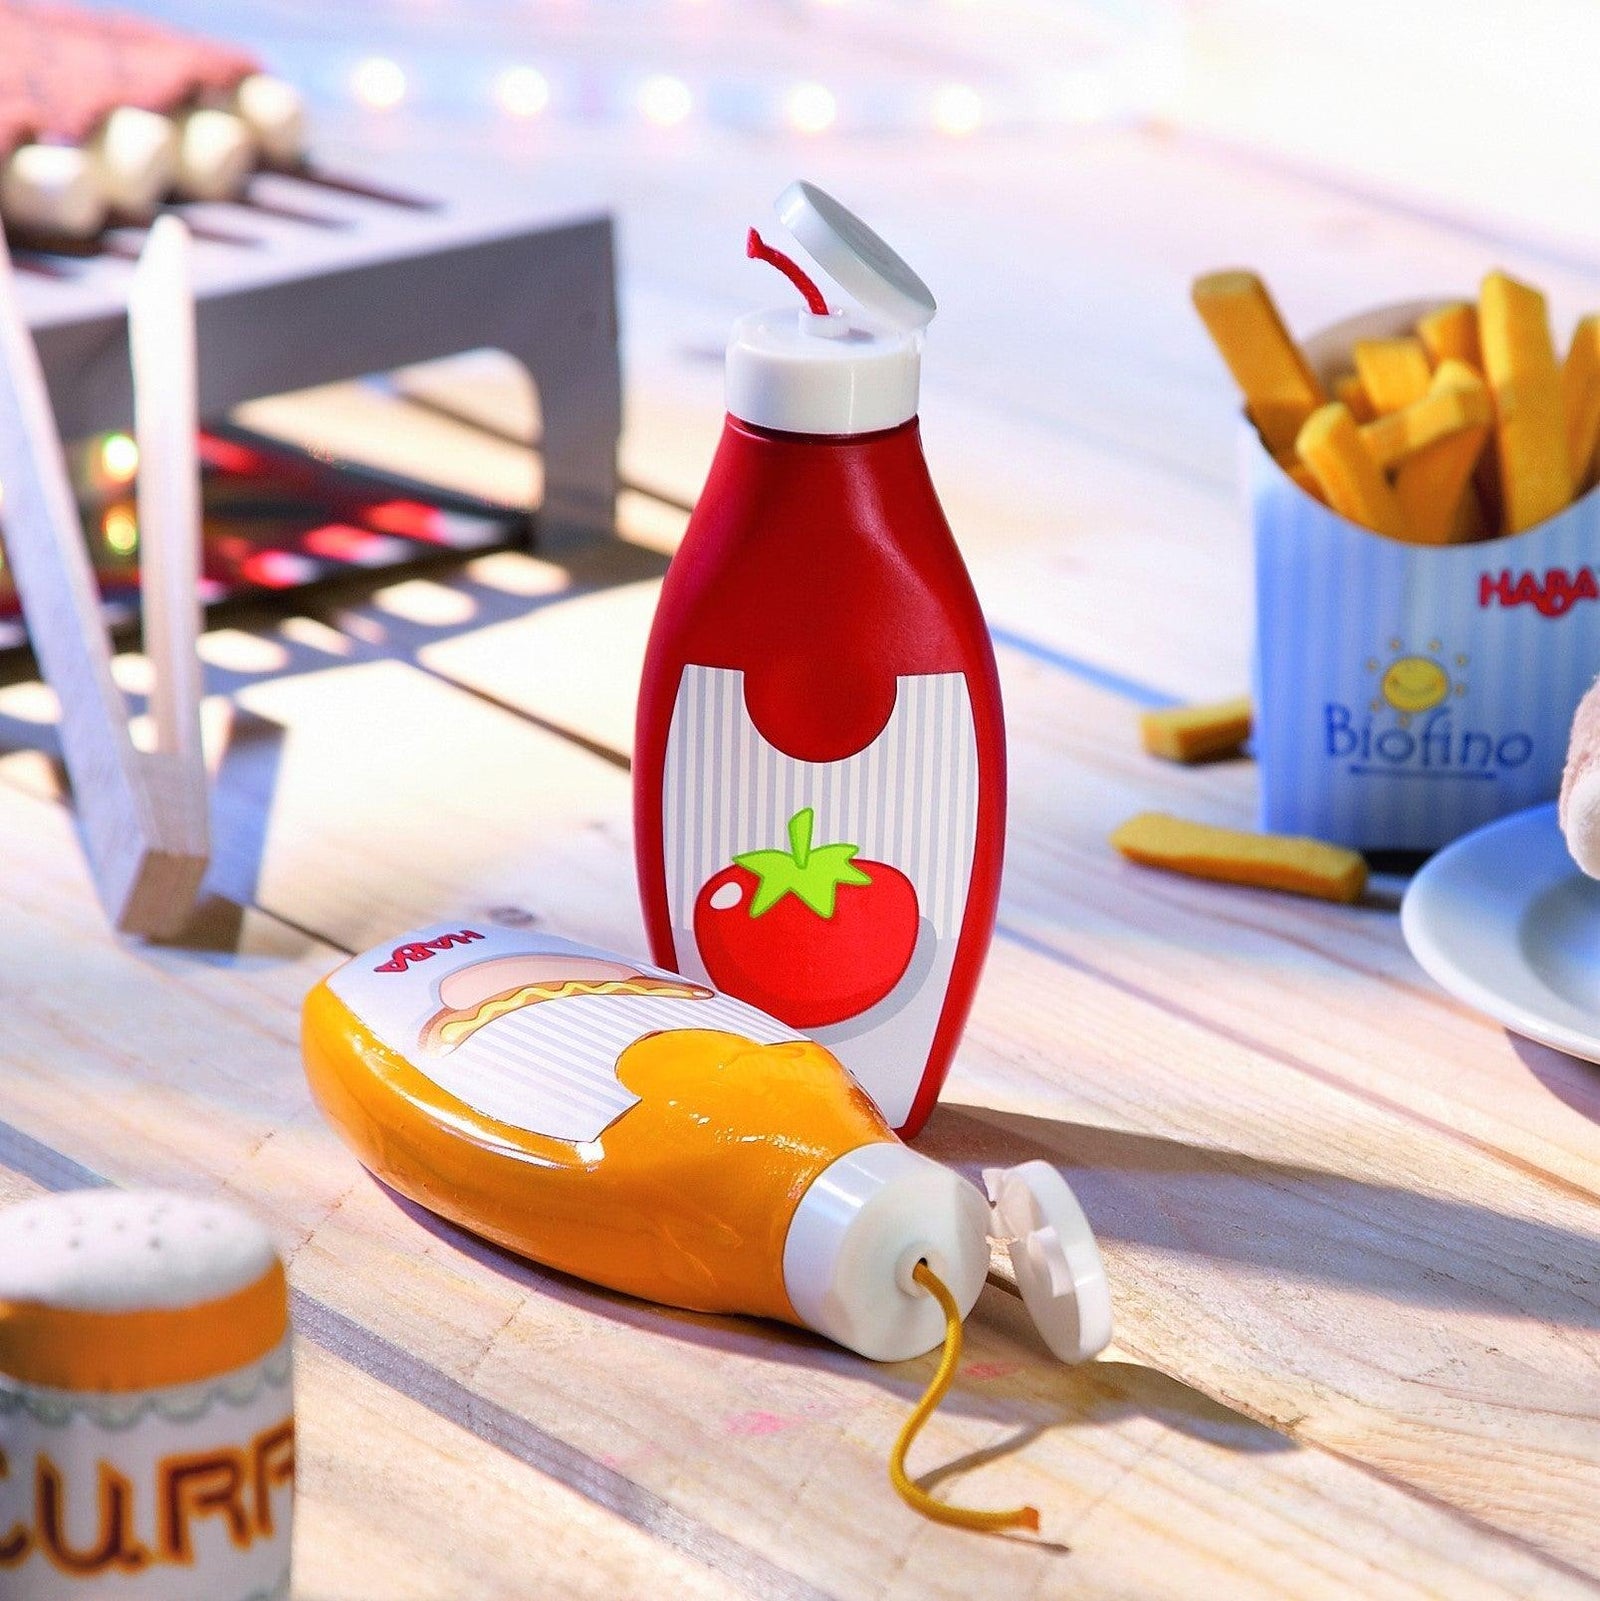 Haba: przyprawa Ketchup/ Musztarda - Noski Noski